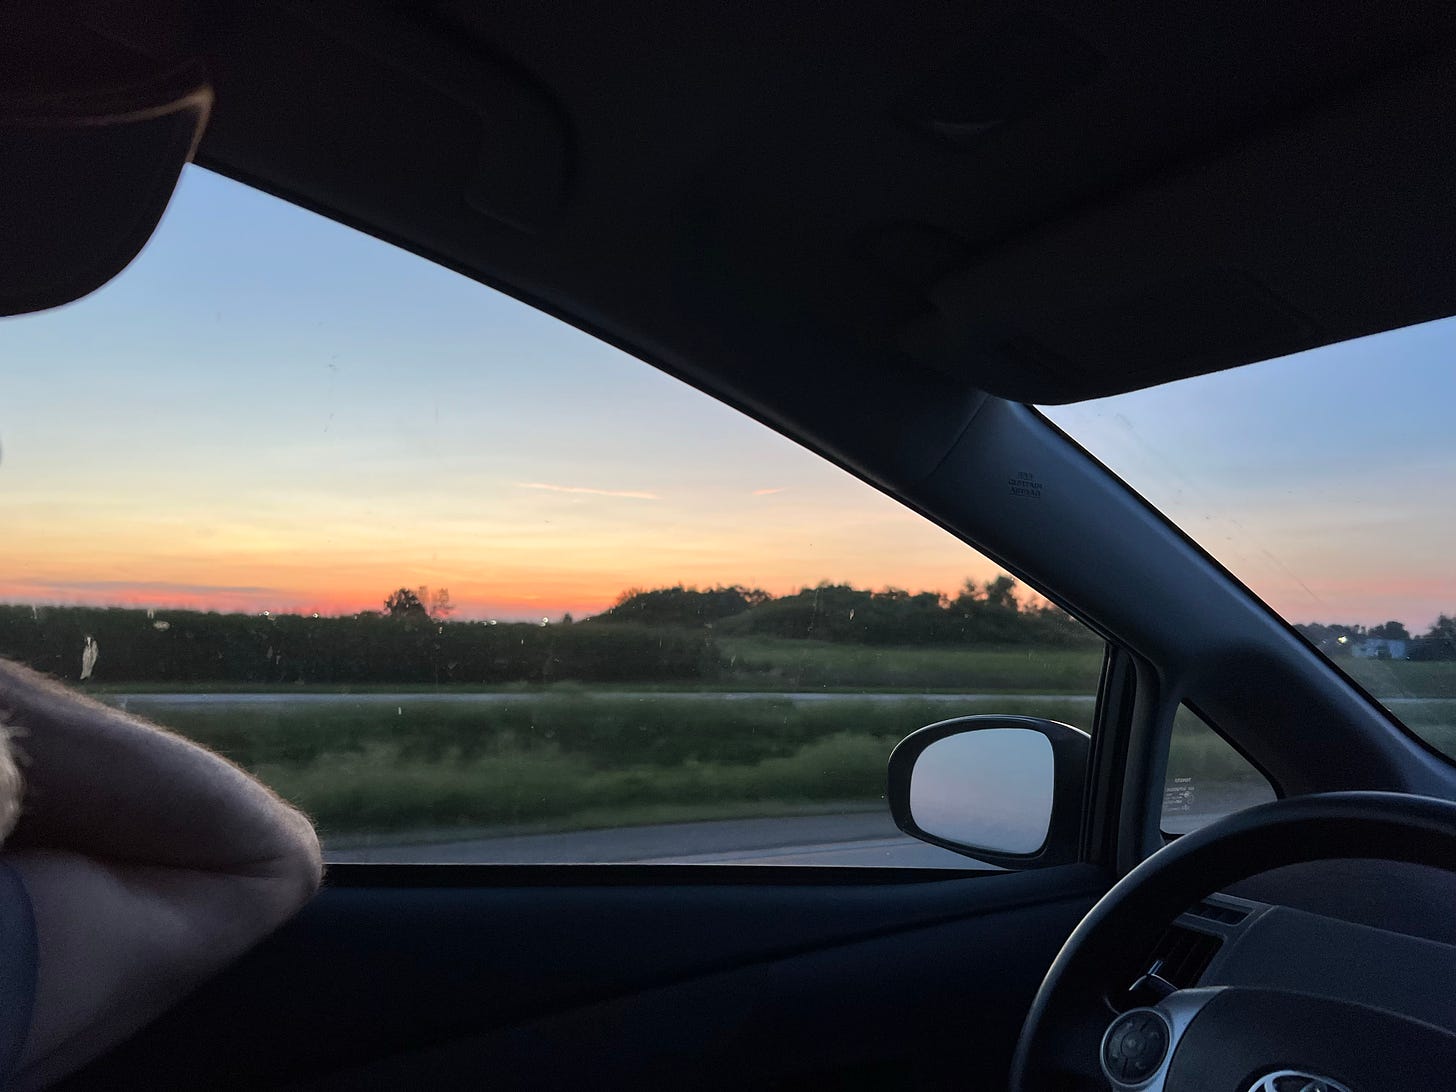 Vivid prairie sunset through a driver's side window of a car